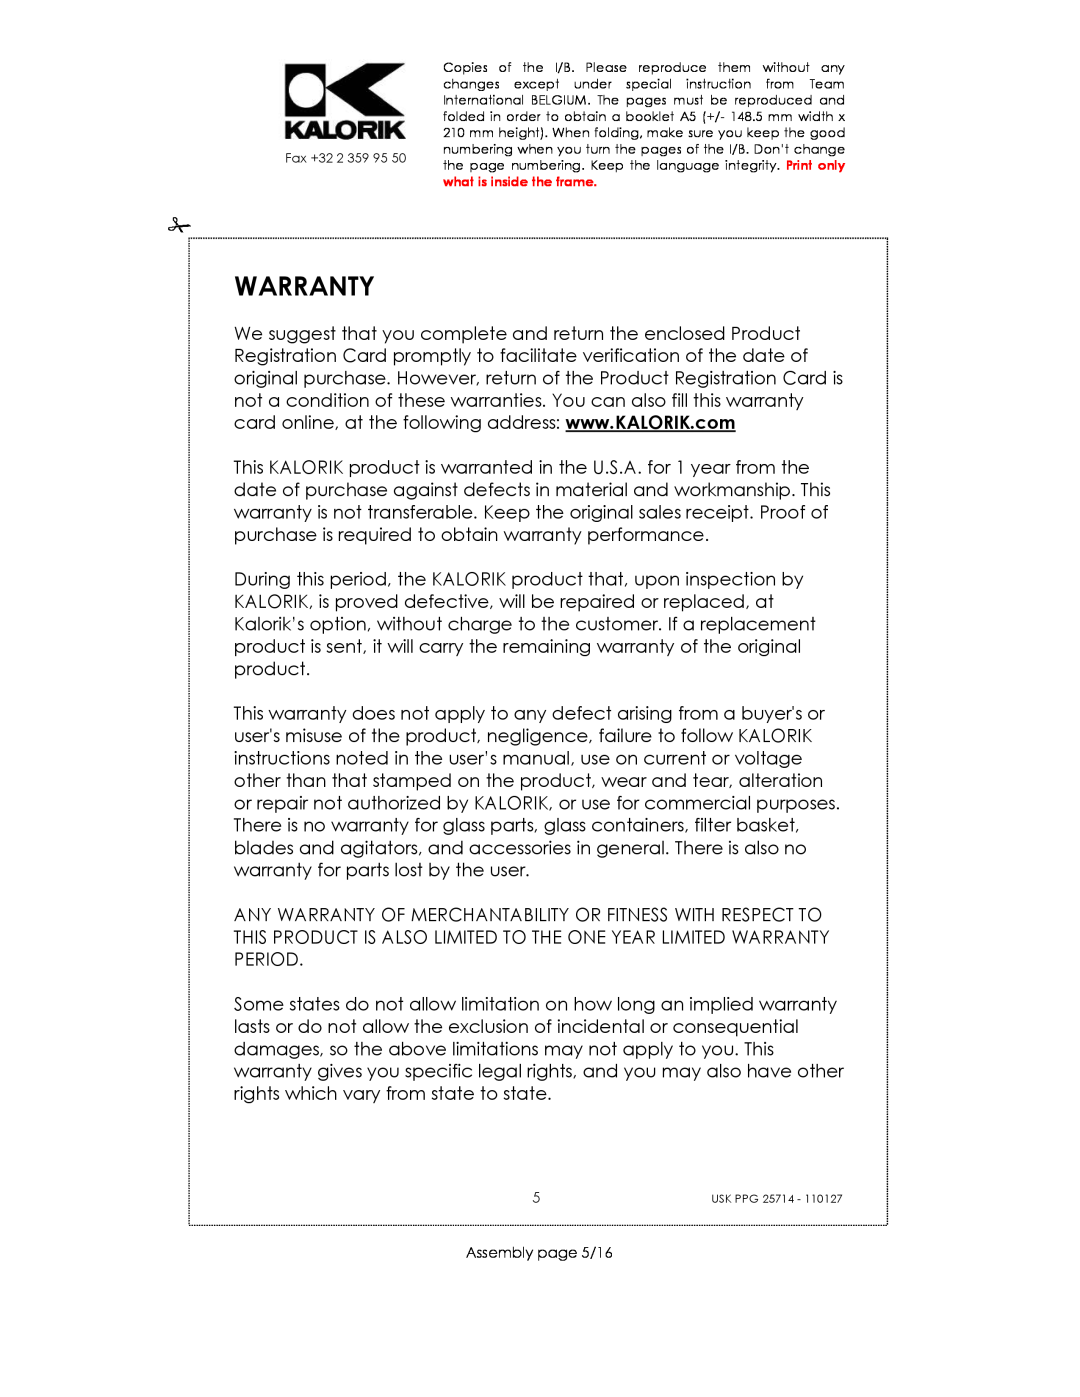 Kalorik USK PPG 25714 manual Warranty, Assembly page 5/16 